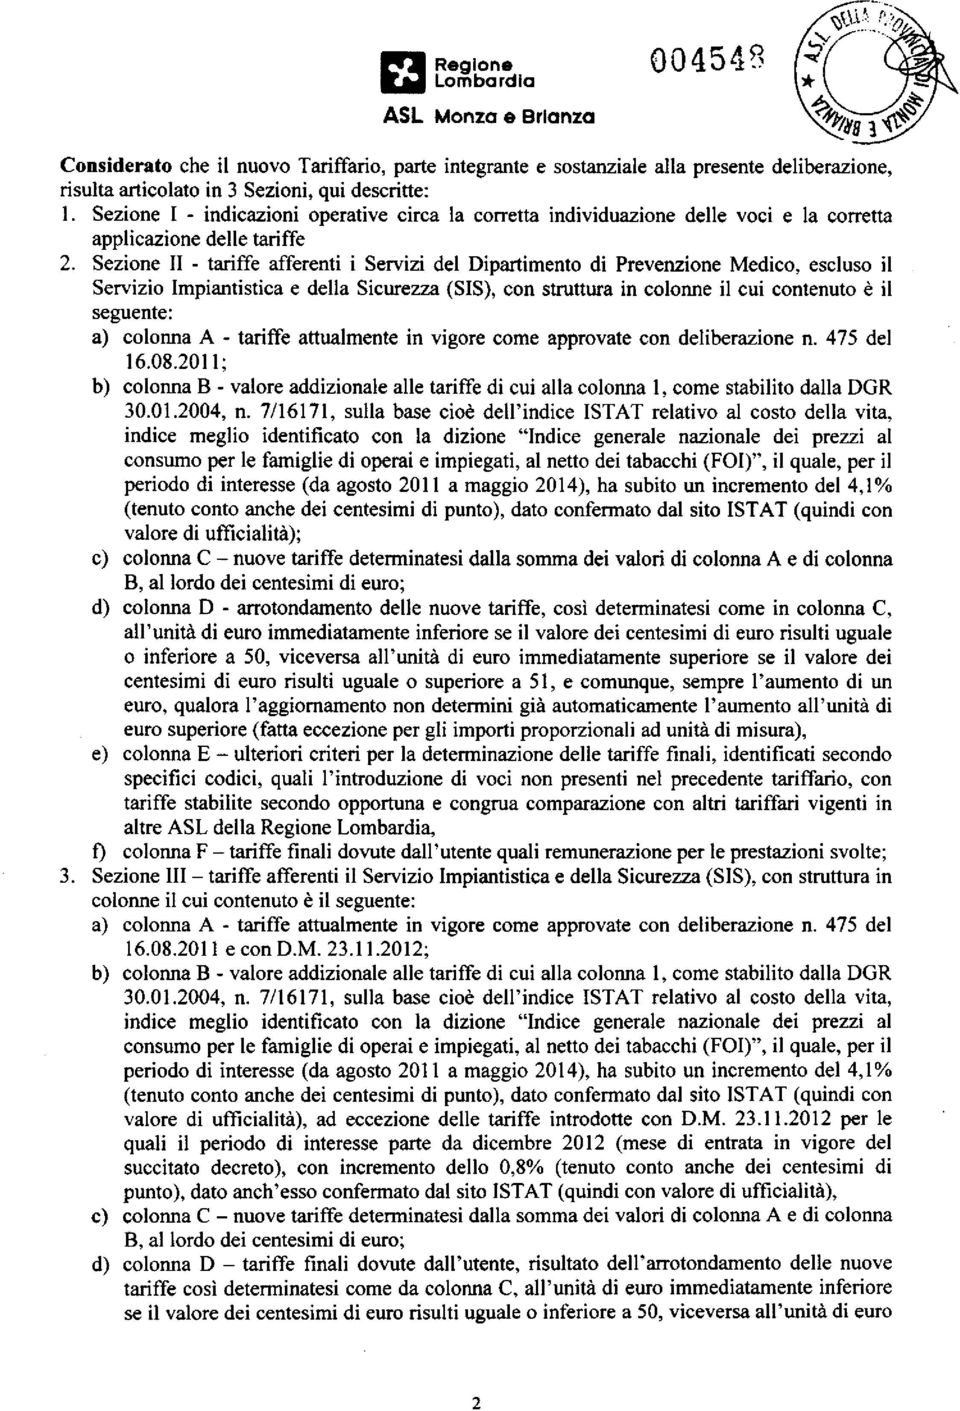 Sezione II - tariffe afferenti i Servizi del Dipartimento di Prevenzione Medico, escluso il Servizio Impiantistica e della Sicurezza (SIS), con struttura in colonne il cui contenuto è il seguente: a)